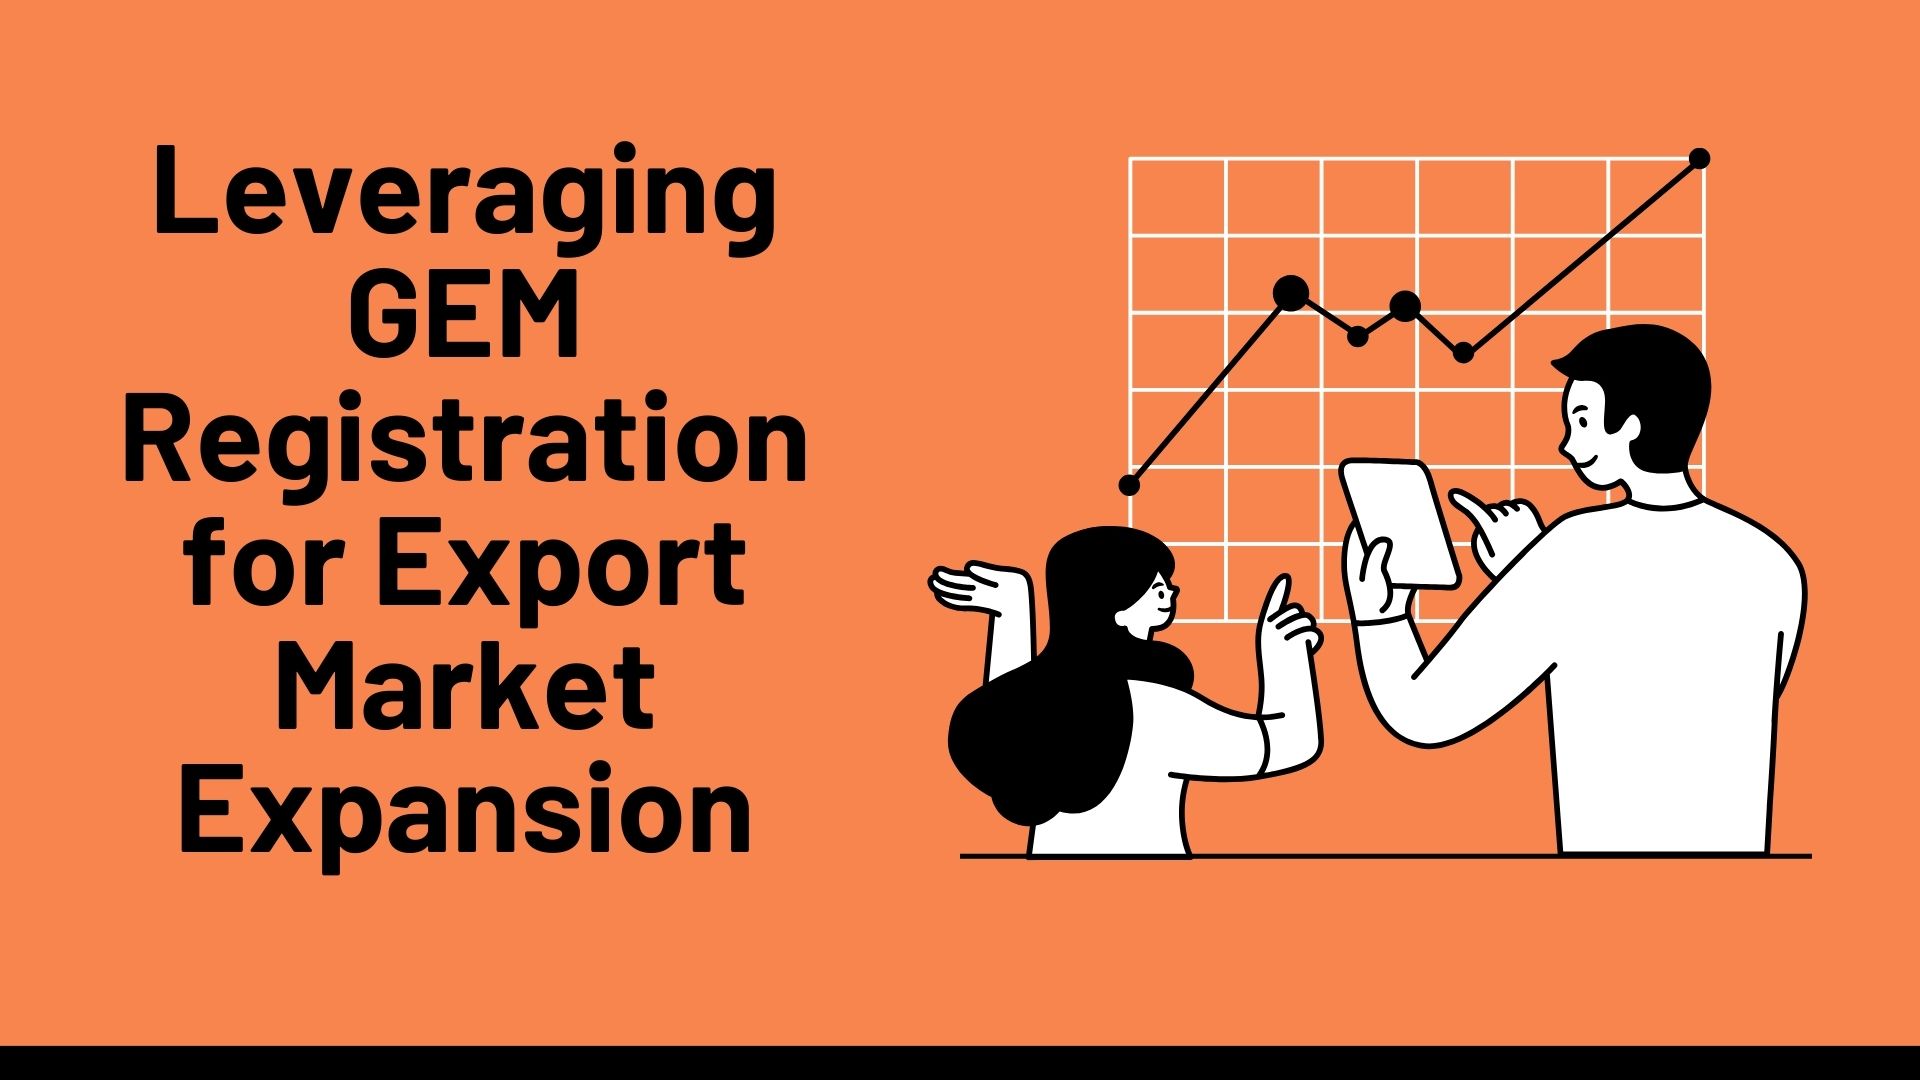 Leveraging GEM Registration for Export Market Expansion